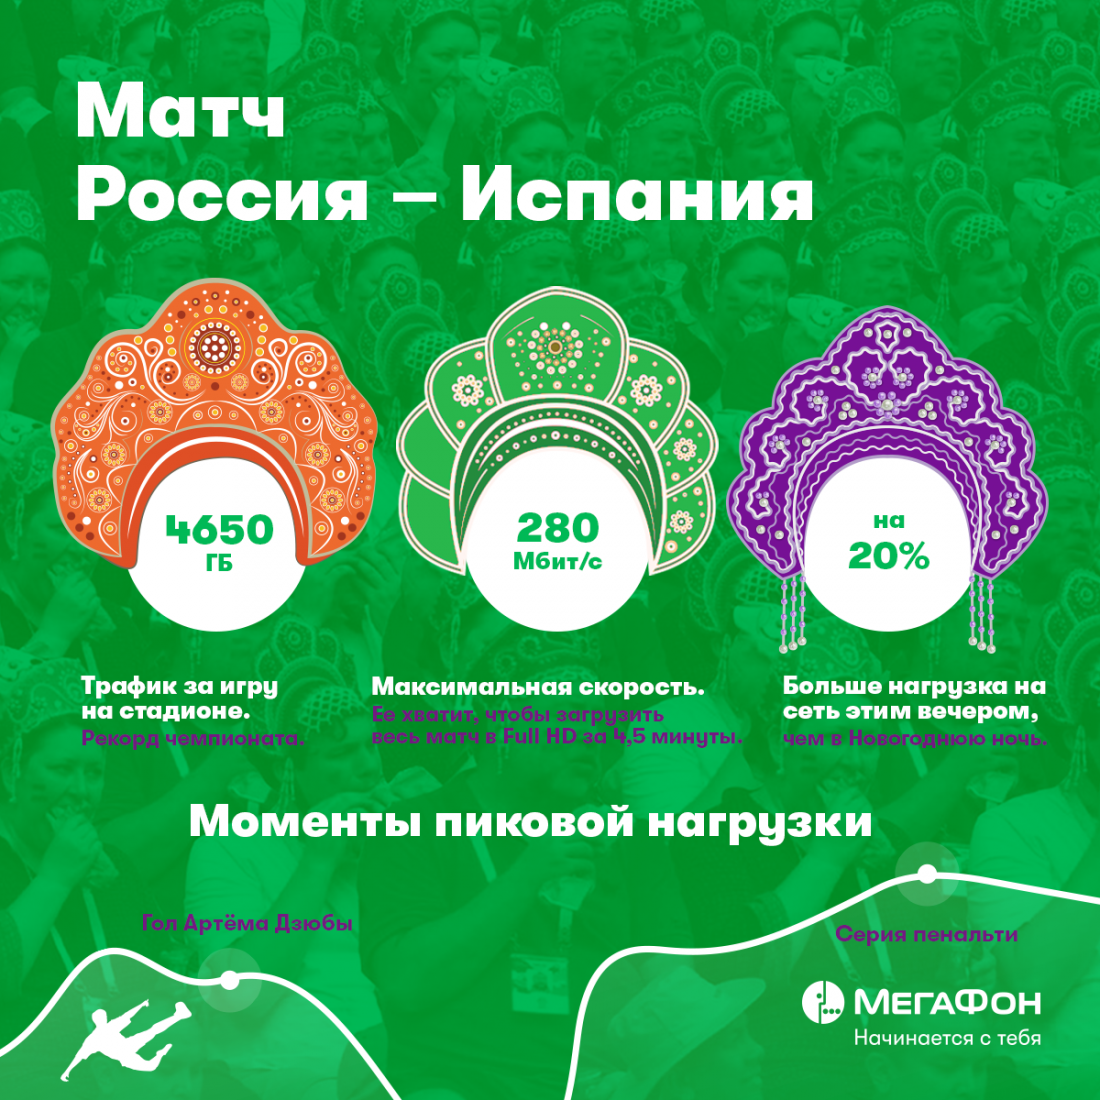 Победа сборной России над Испанией установила абсолютный рекорд по нагрузке на мобильную сеть.